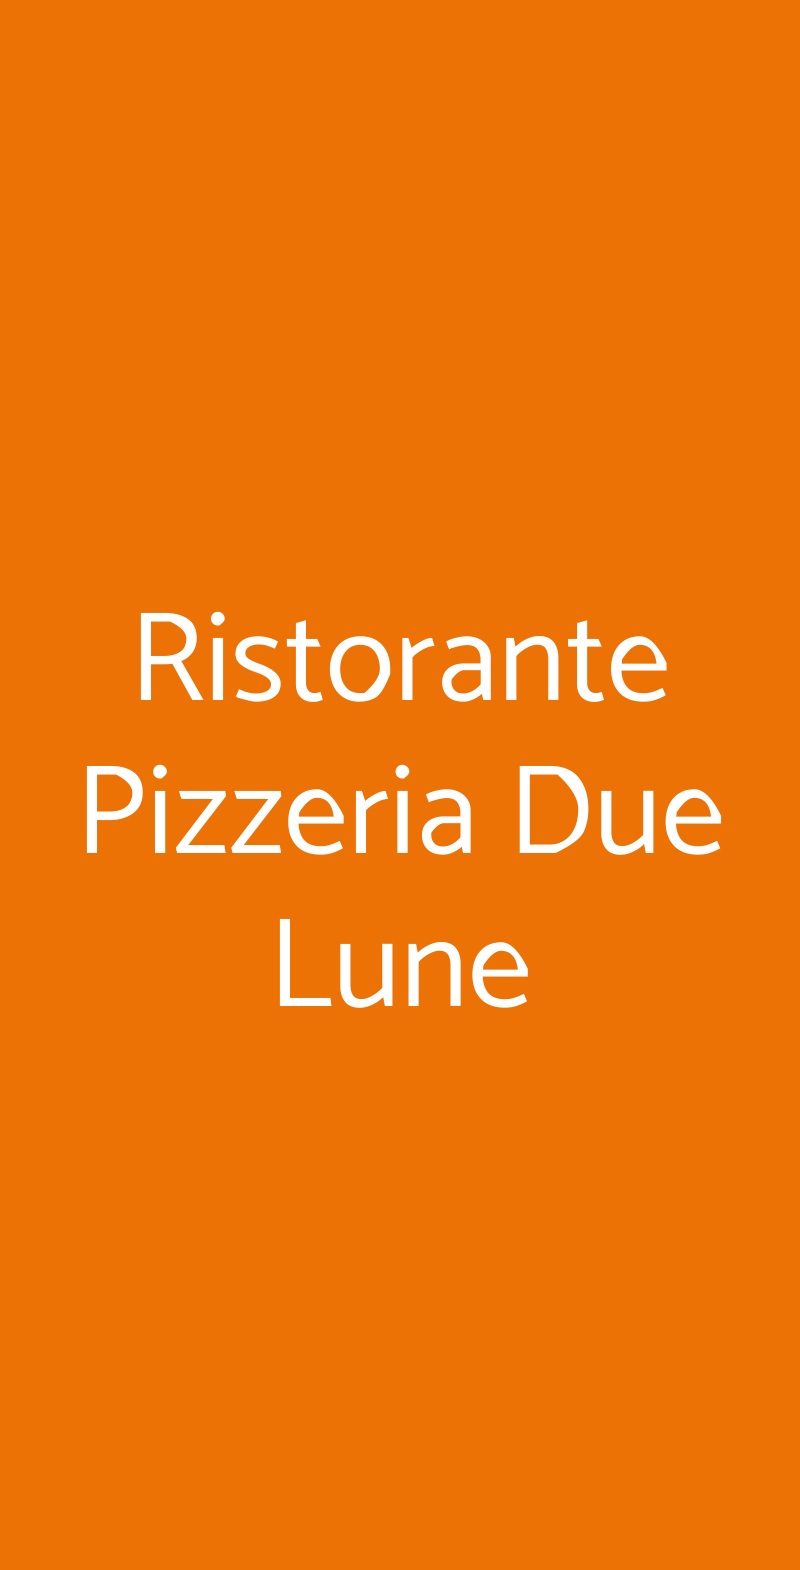 Ristorante Pizzeria Due Lune Bologna menù 1 pagina